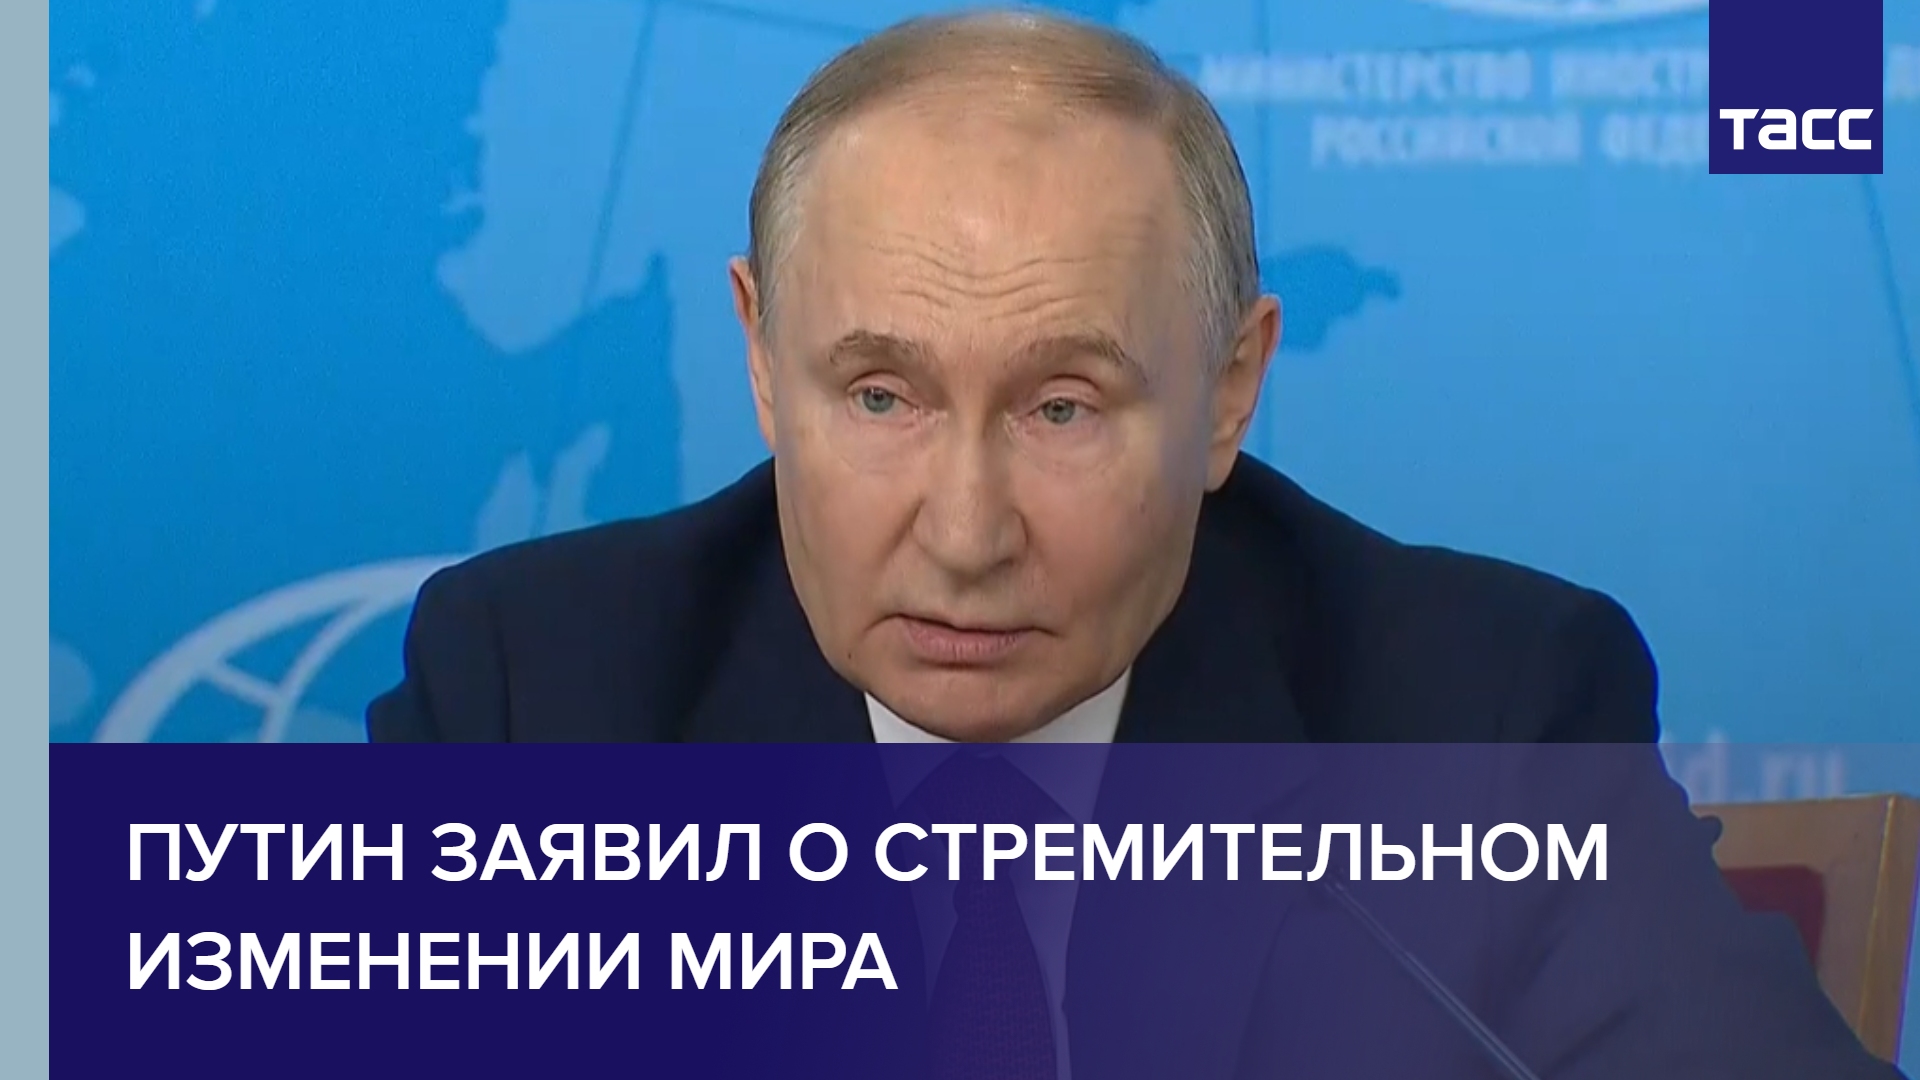 Путин заявил о стремительном изменении мира